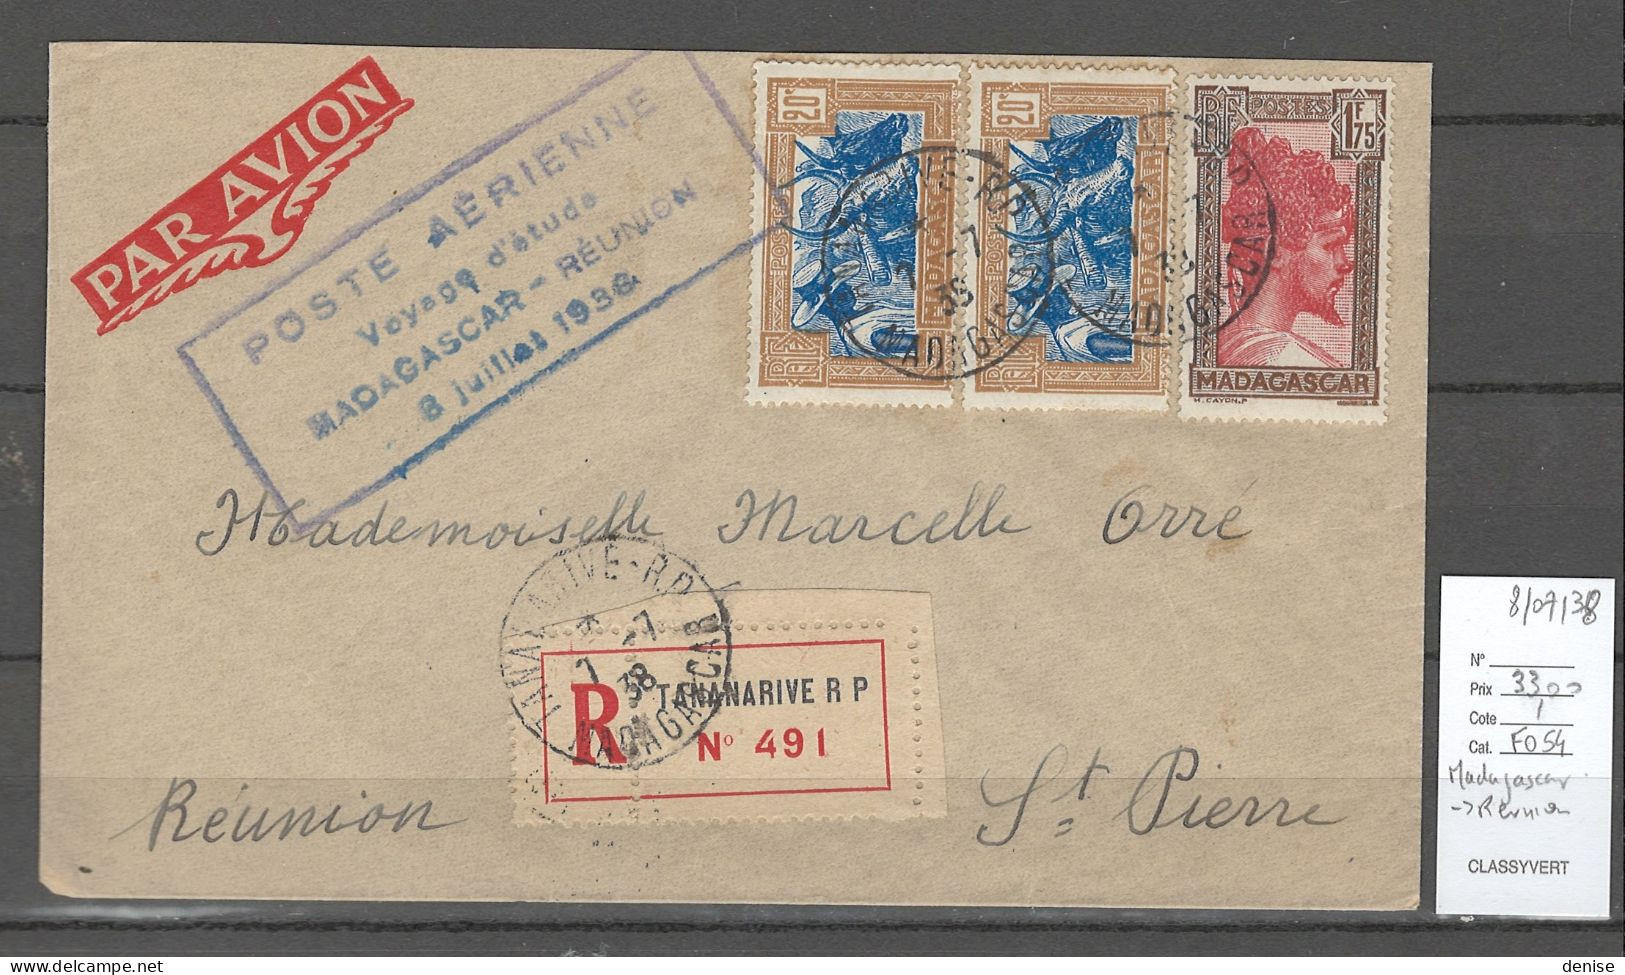 Madagascar - Voyage D'études Pour La Réunion - 07/1936 - Airmail